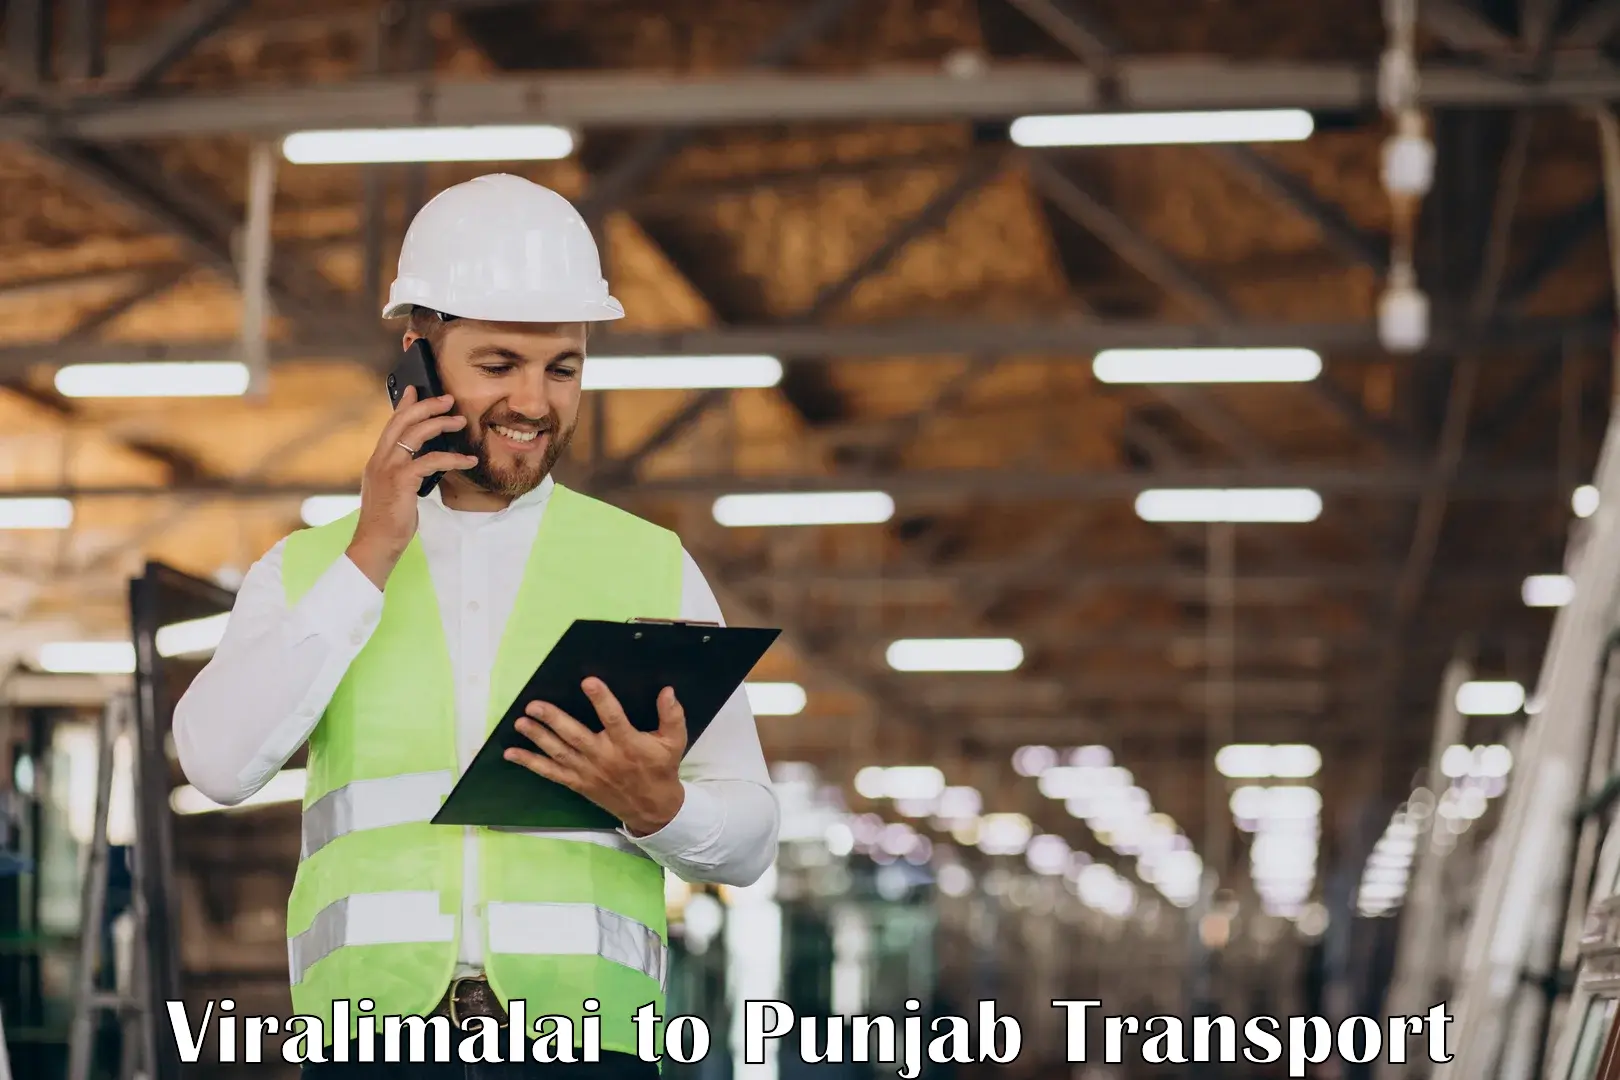 Cargo train transport services Viralimalai to Punjab